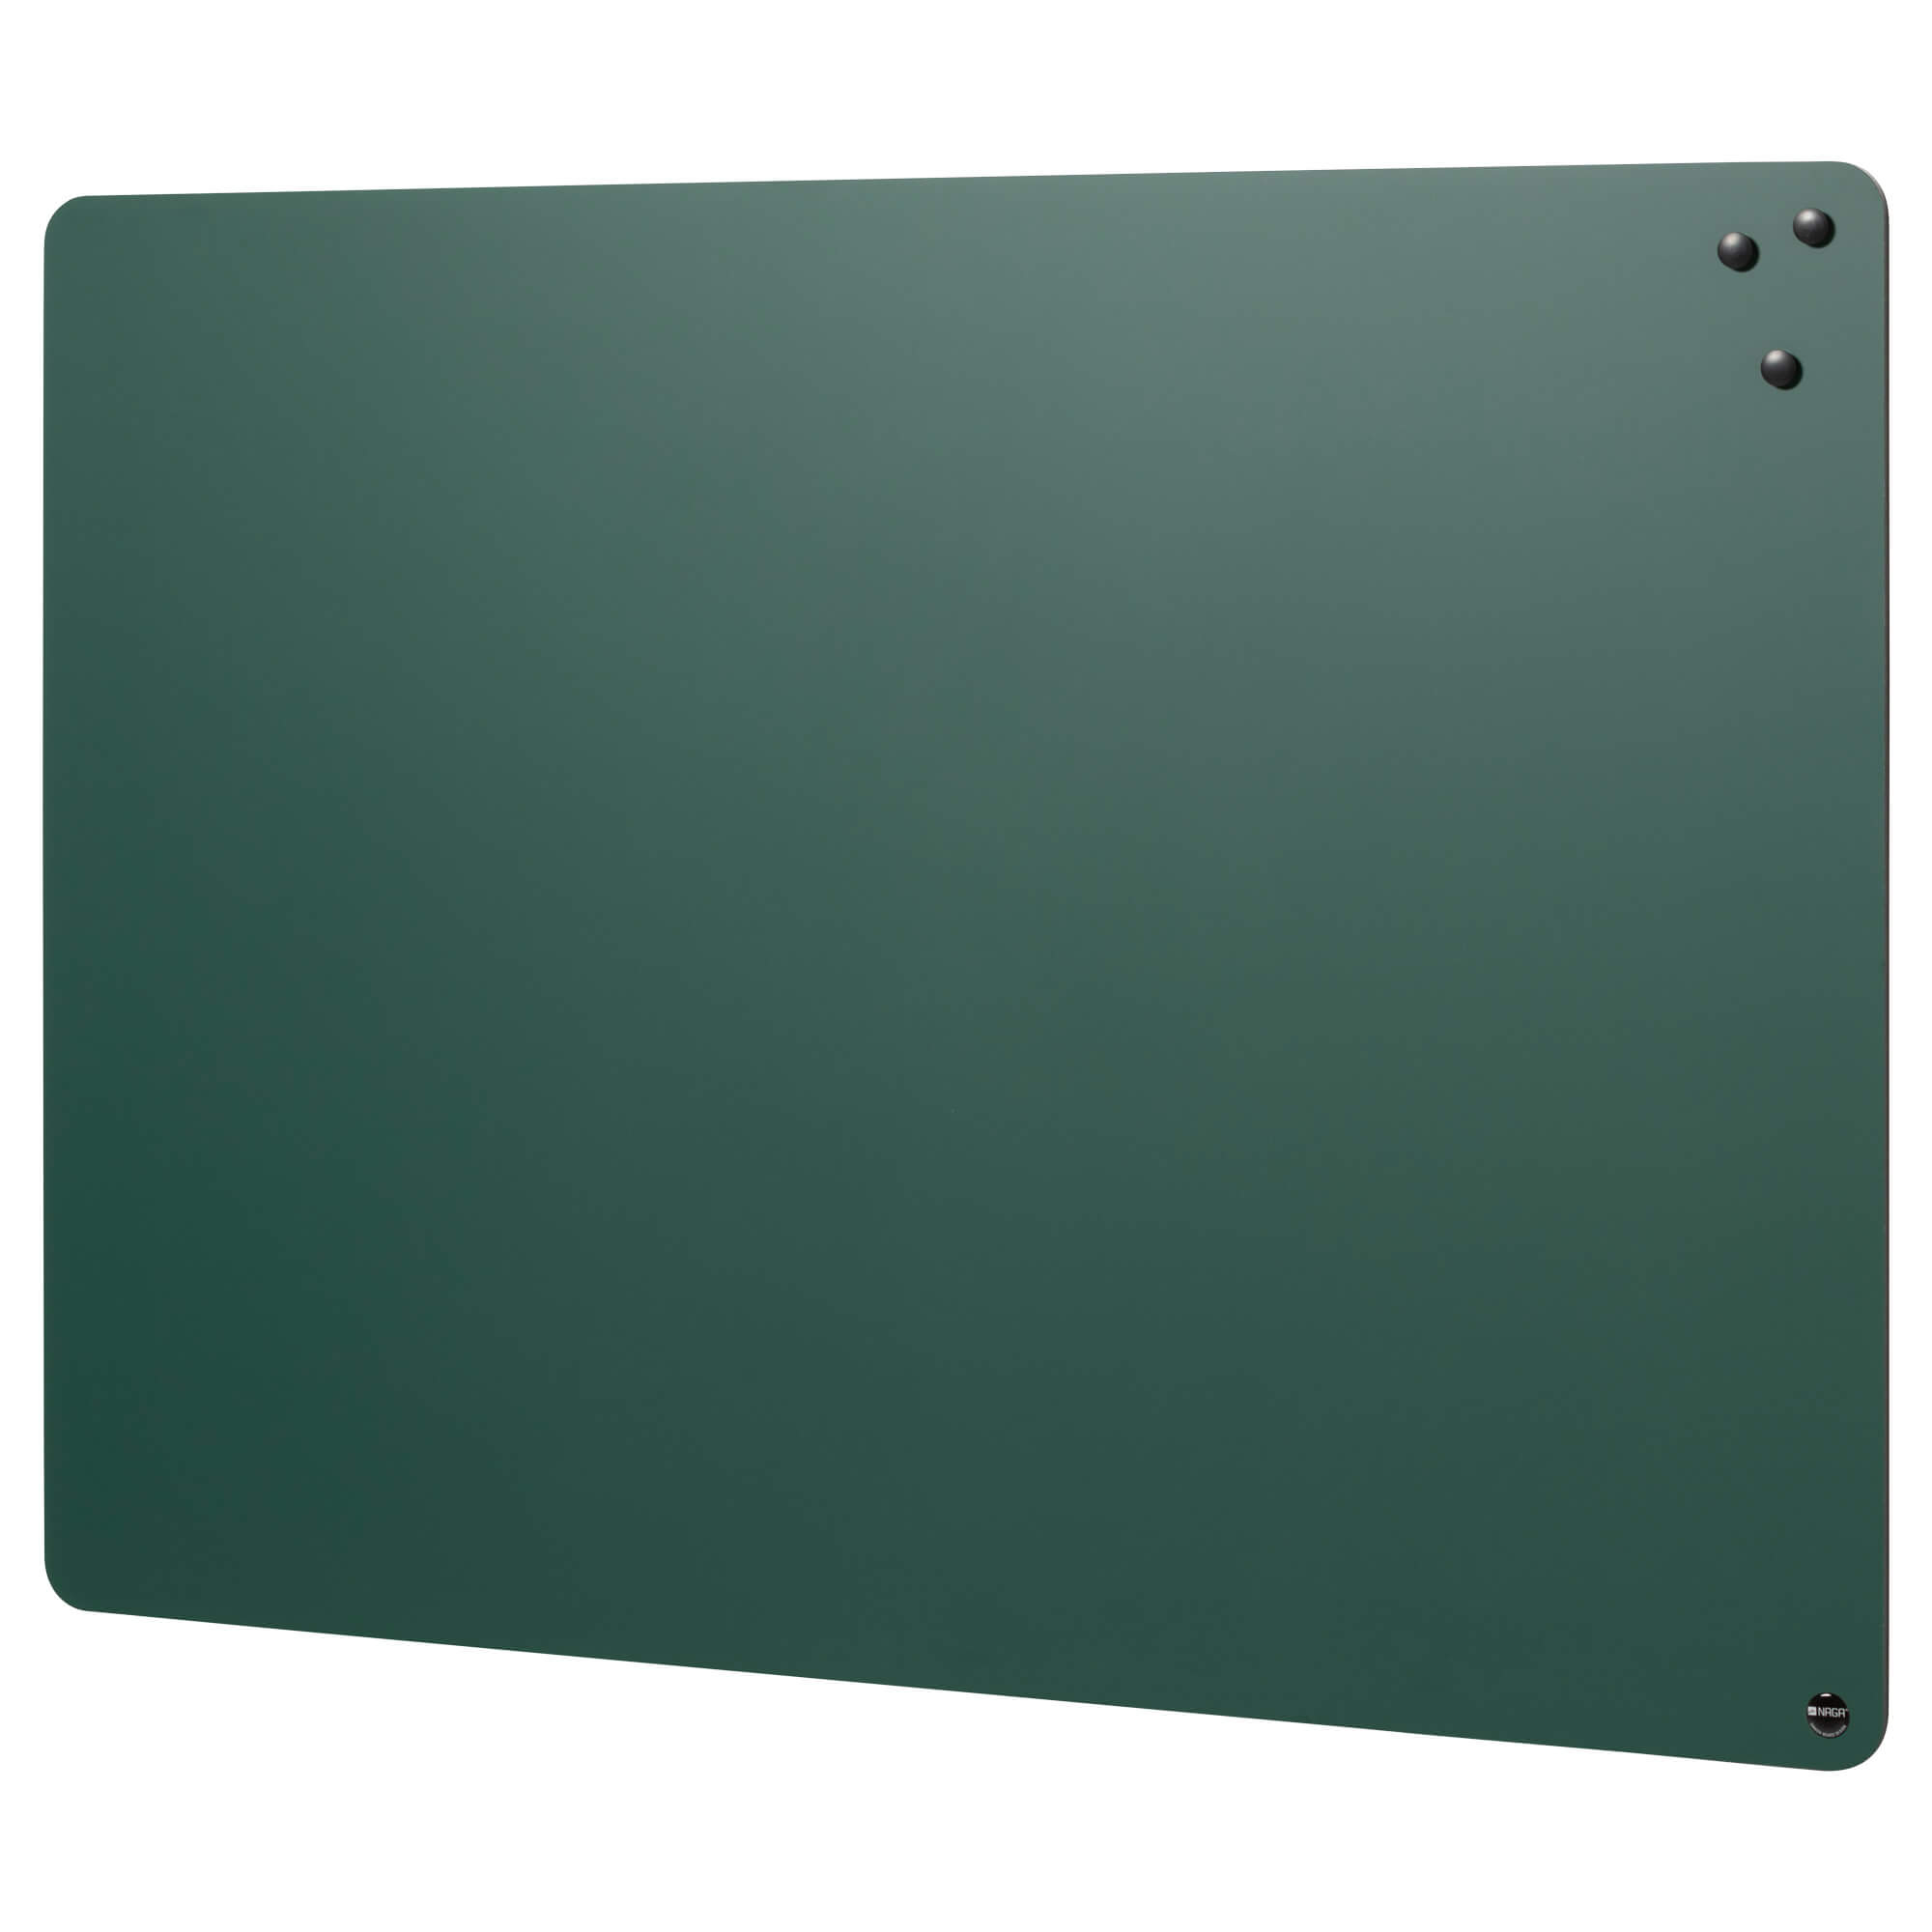 Se 57 x 45 cm. Magnetisk, grøn kridttavle uden ramme hos Naga.dk